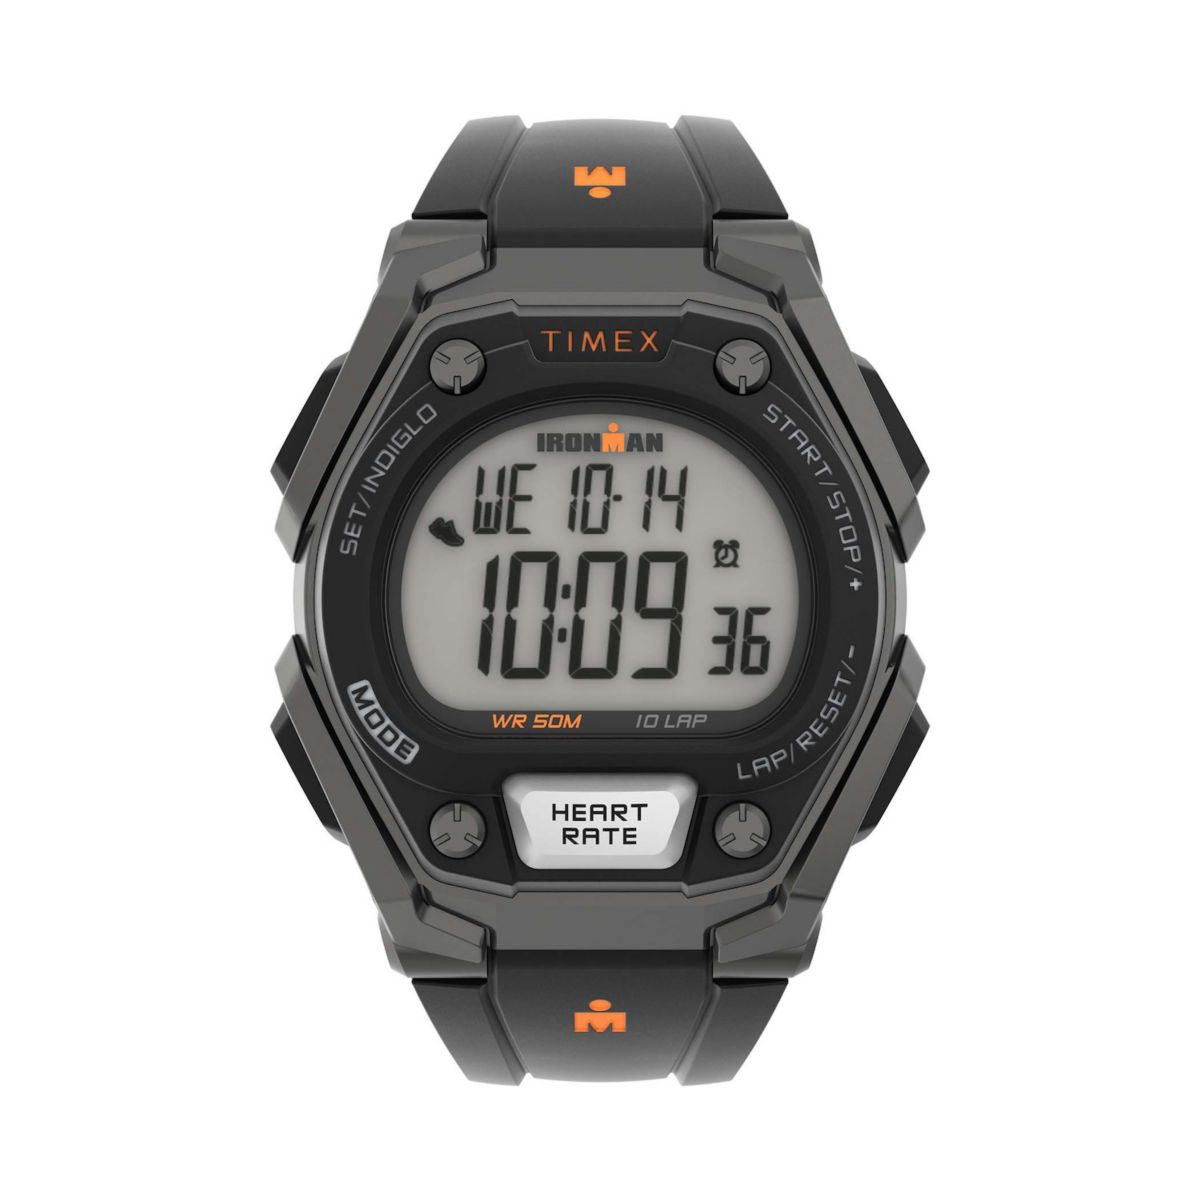 Мужские часы Ironman® Classic 10+ Timex® с отслеживанием активности и пульсометром — TW5M49400JT Timex